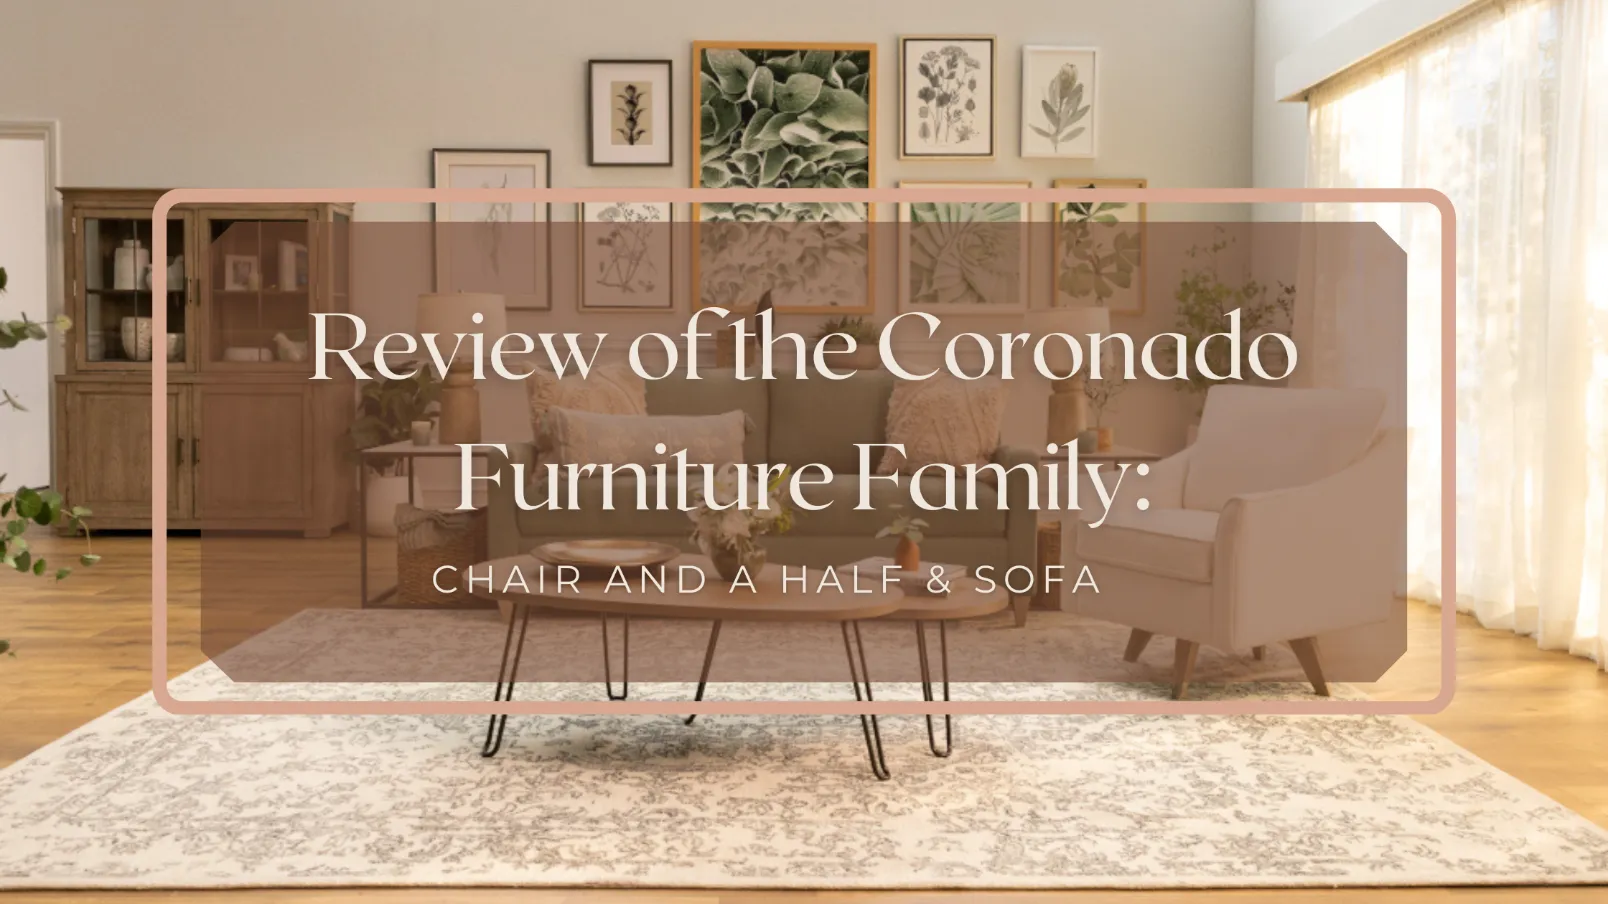 Review of La-Z-Boy’s Coronado Furniture Family: Chair & Sofa